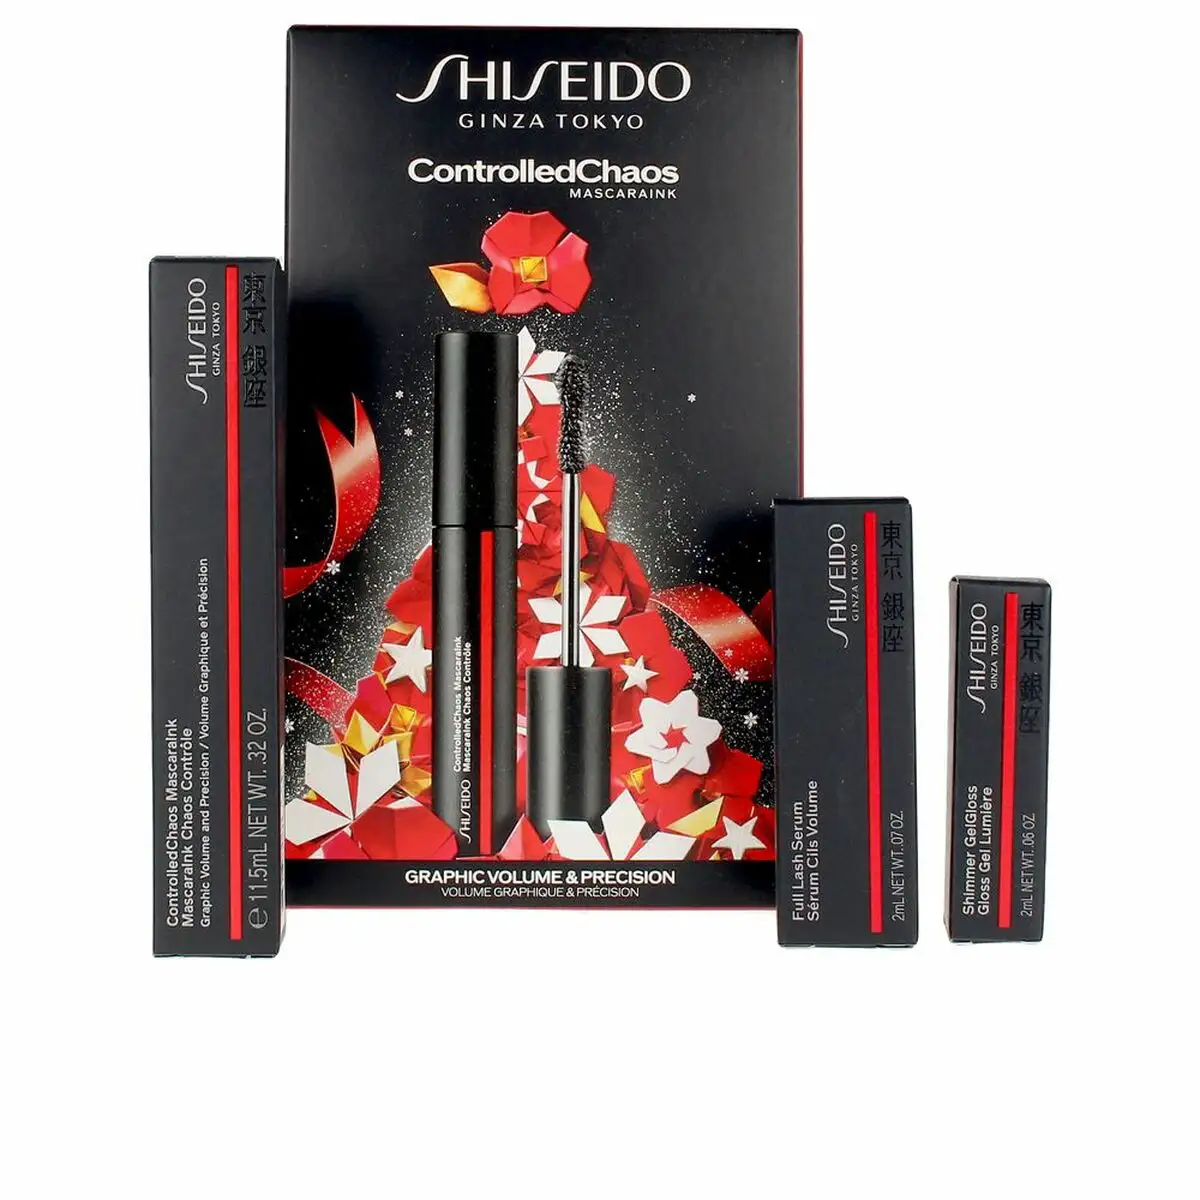 Set de maquillage shiseido controlled chaos mascaraink lote 3 pieces_3996. DIAYTAR SENEGAL - L'Essence de la Tradition et de la Modernité réunies. Explorez notre plateforme en ligne pour trouver des produits authentiques du Sénégal, tout en découvrant les dernières tendances du monde moderne.